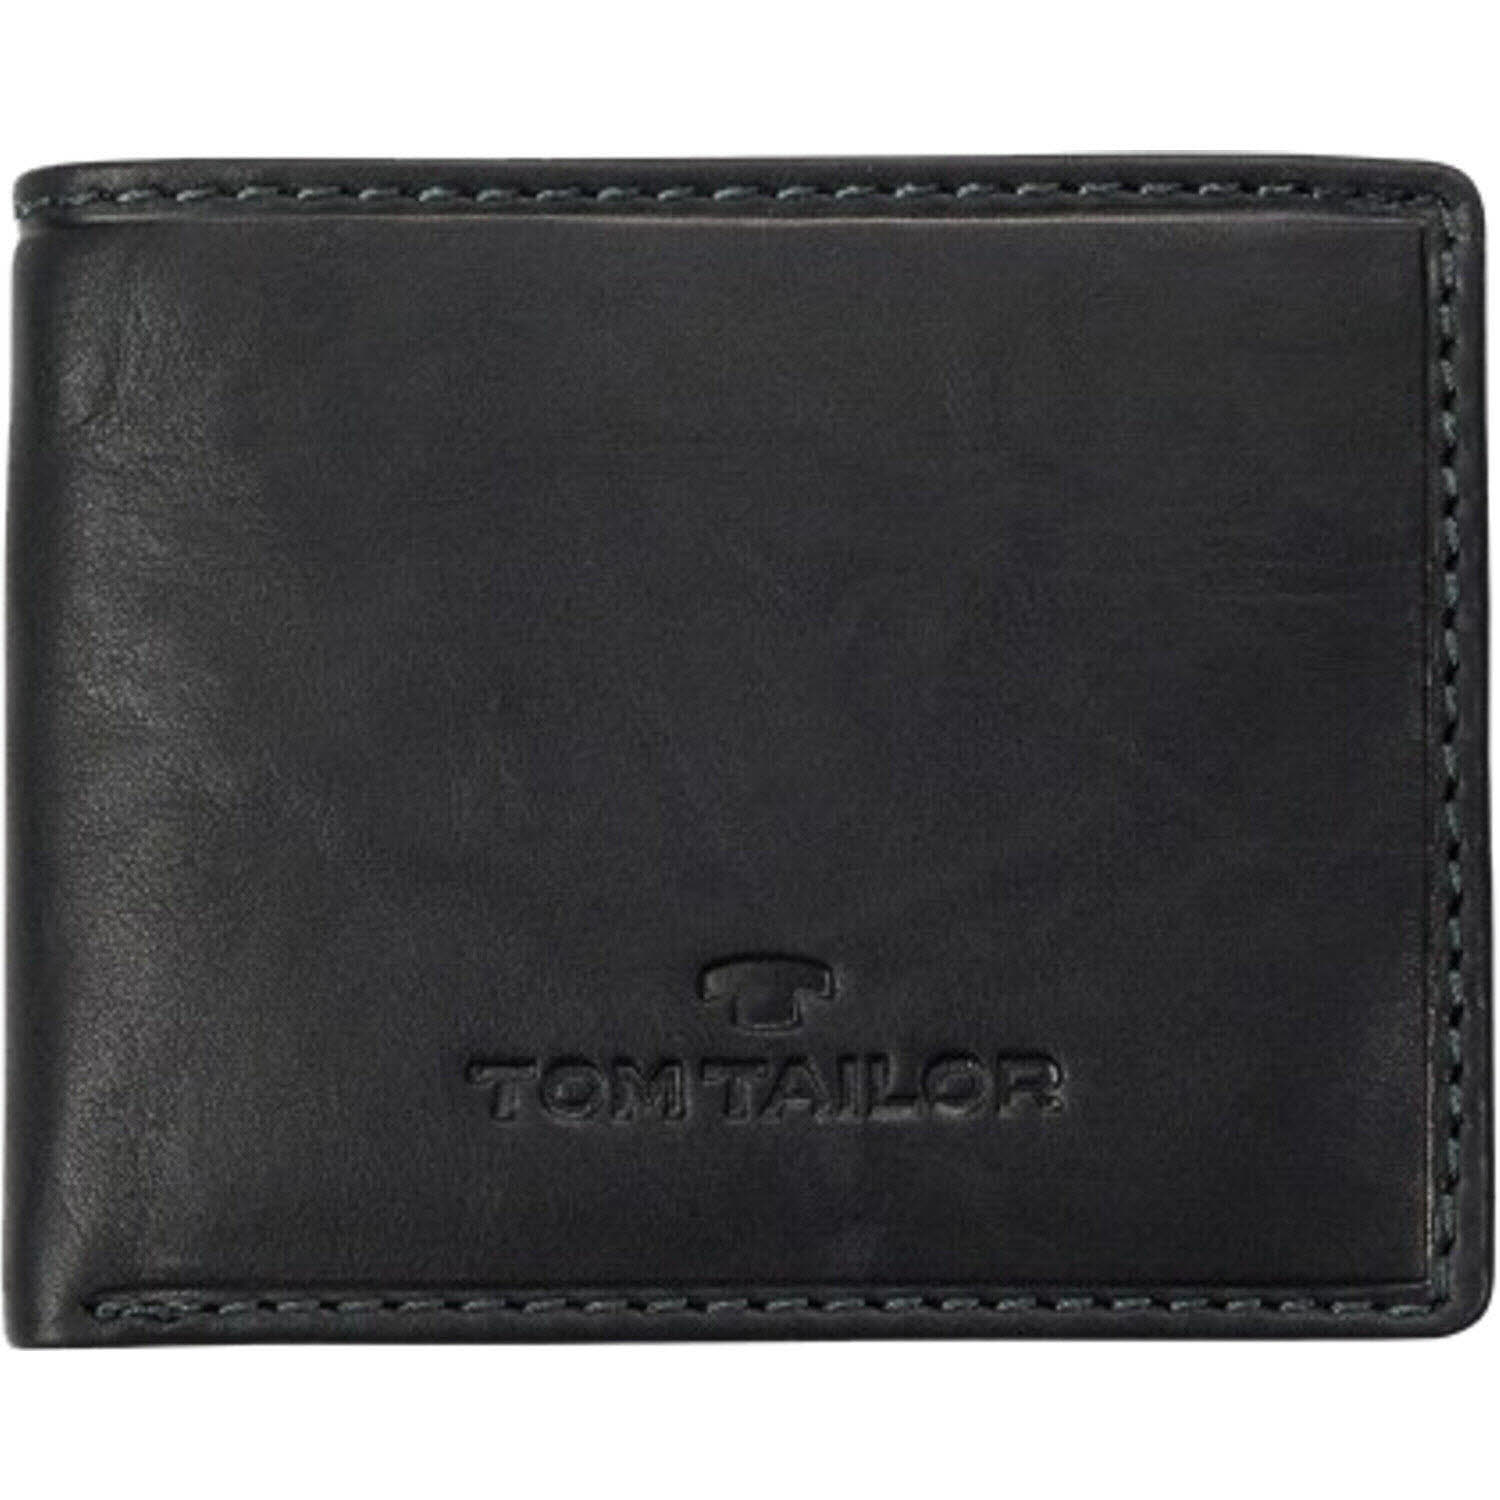 Herren Geldbörse von Tom Tailor auch in Schwarz erhältlich